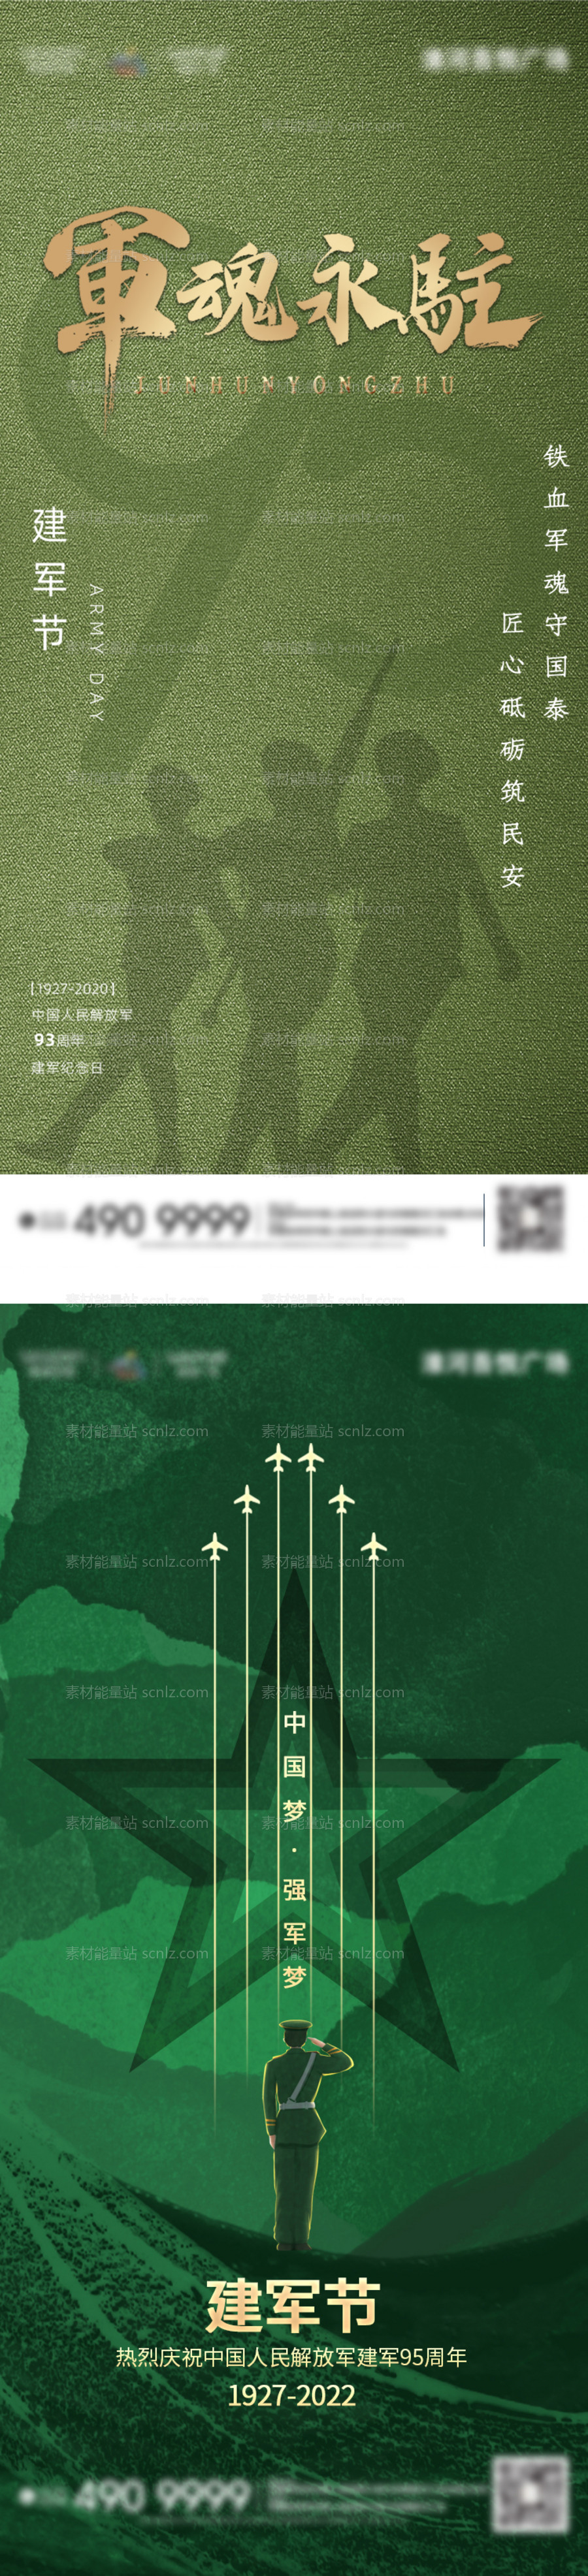 素材能量站-建军节节日海报